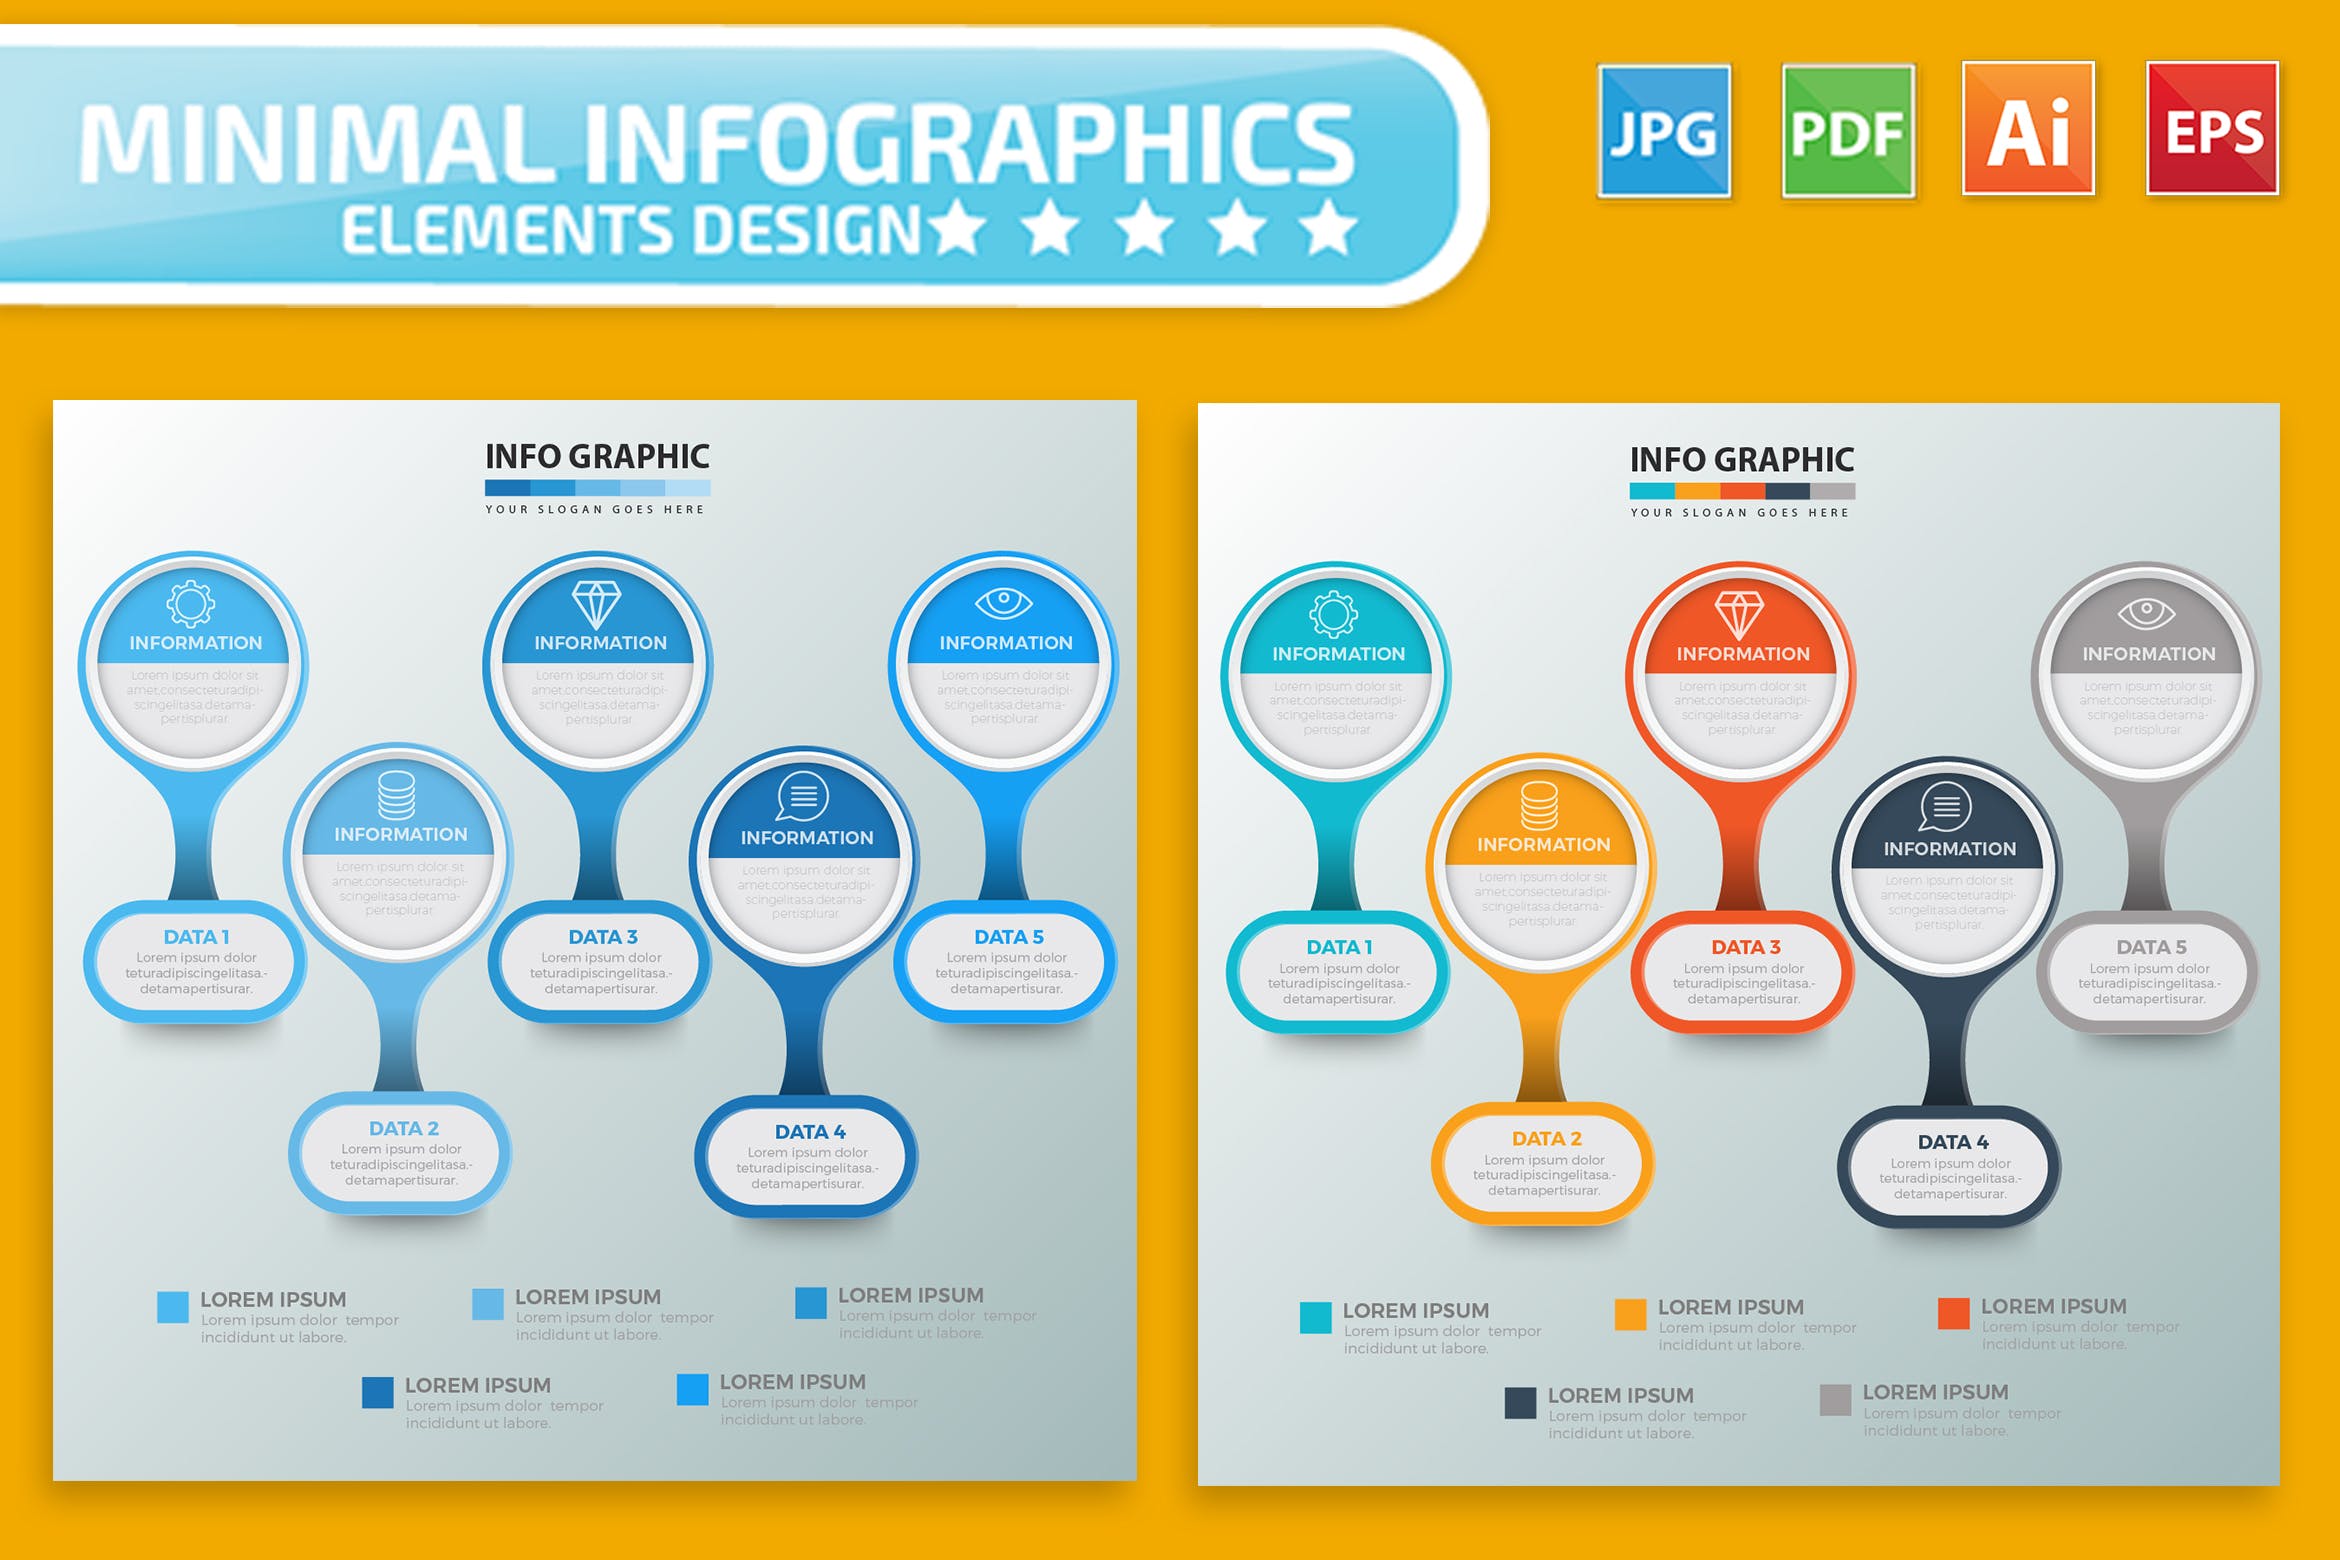 要点说明/重要特征信息图表矢量图形素材库精选素材v2 Infographic Elements Design插图